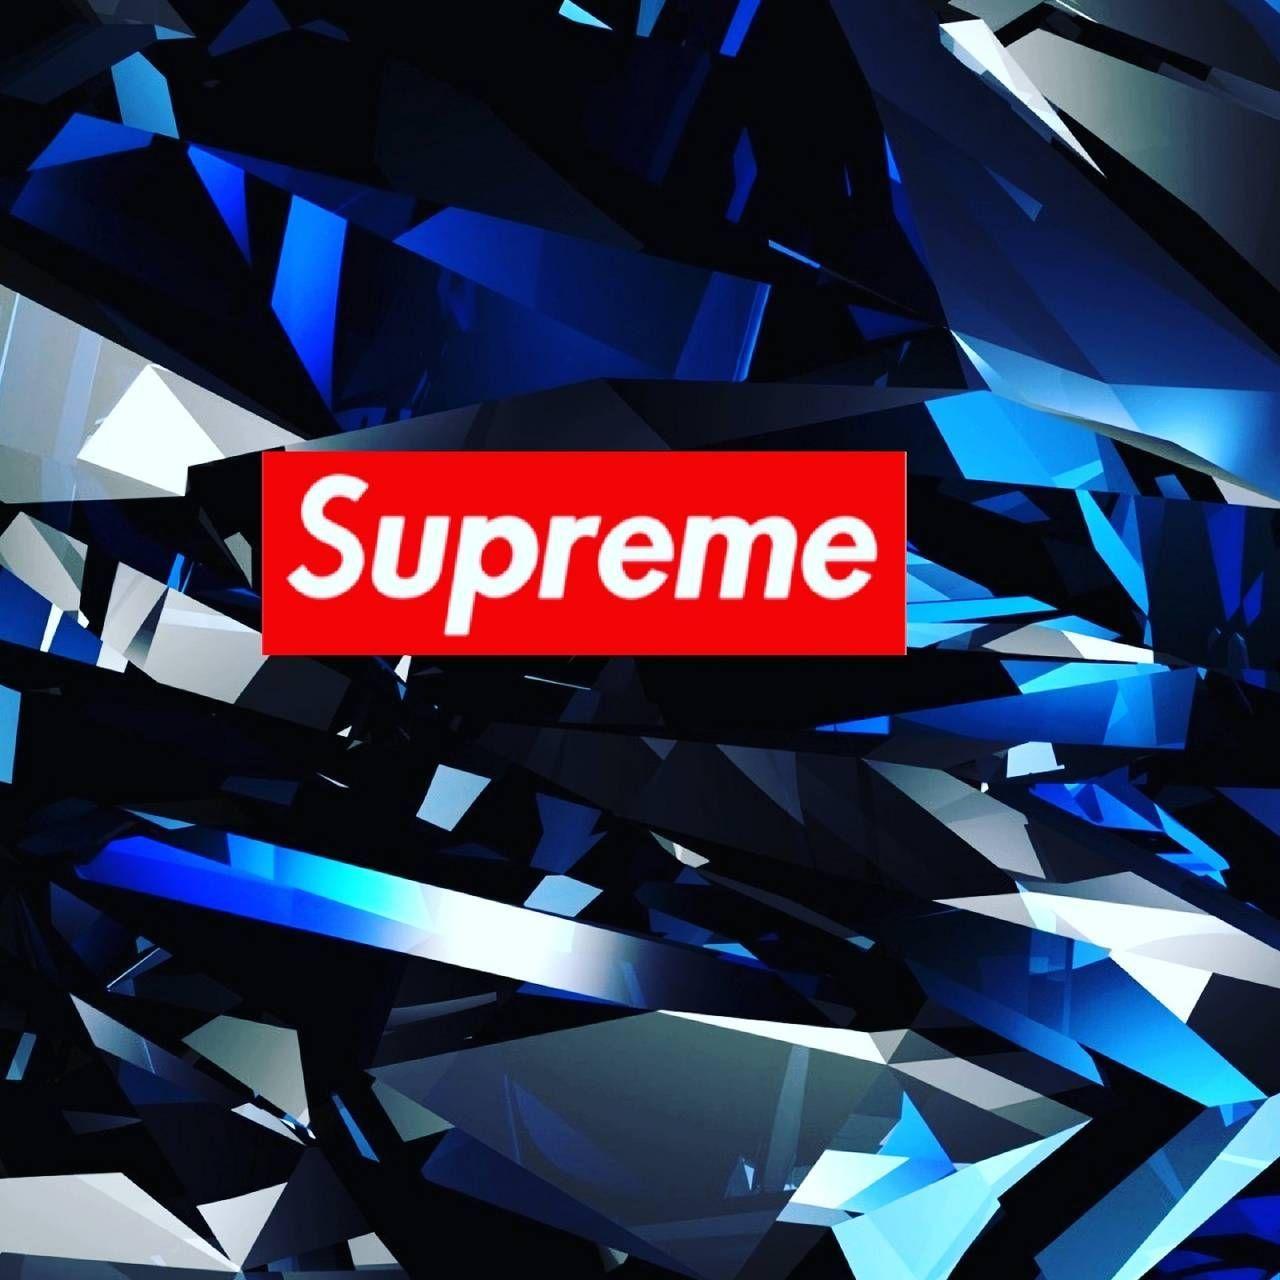 Supreme Diamond Wallpapers - Top Free Supreme Diamond Backgrounds